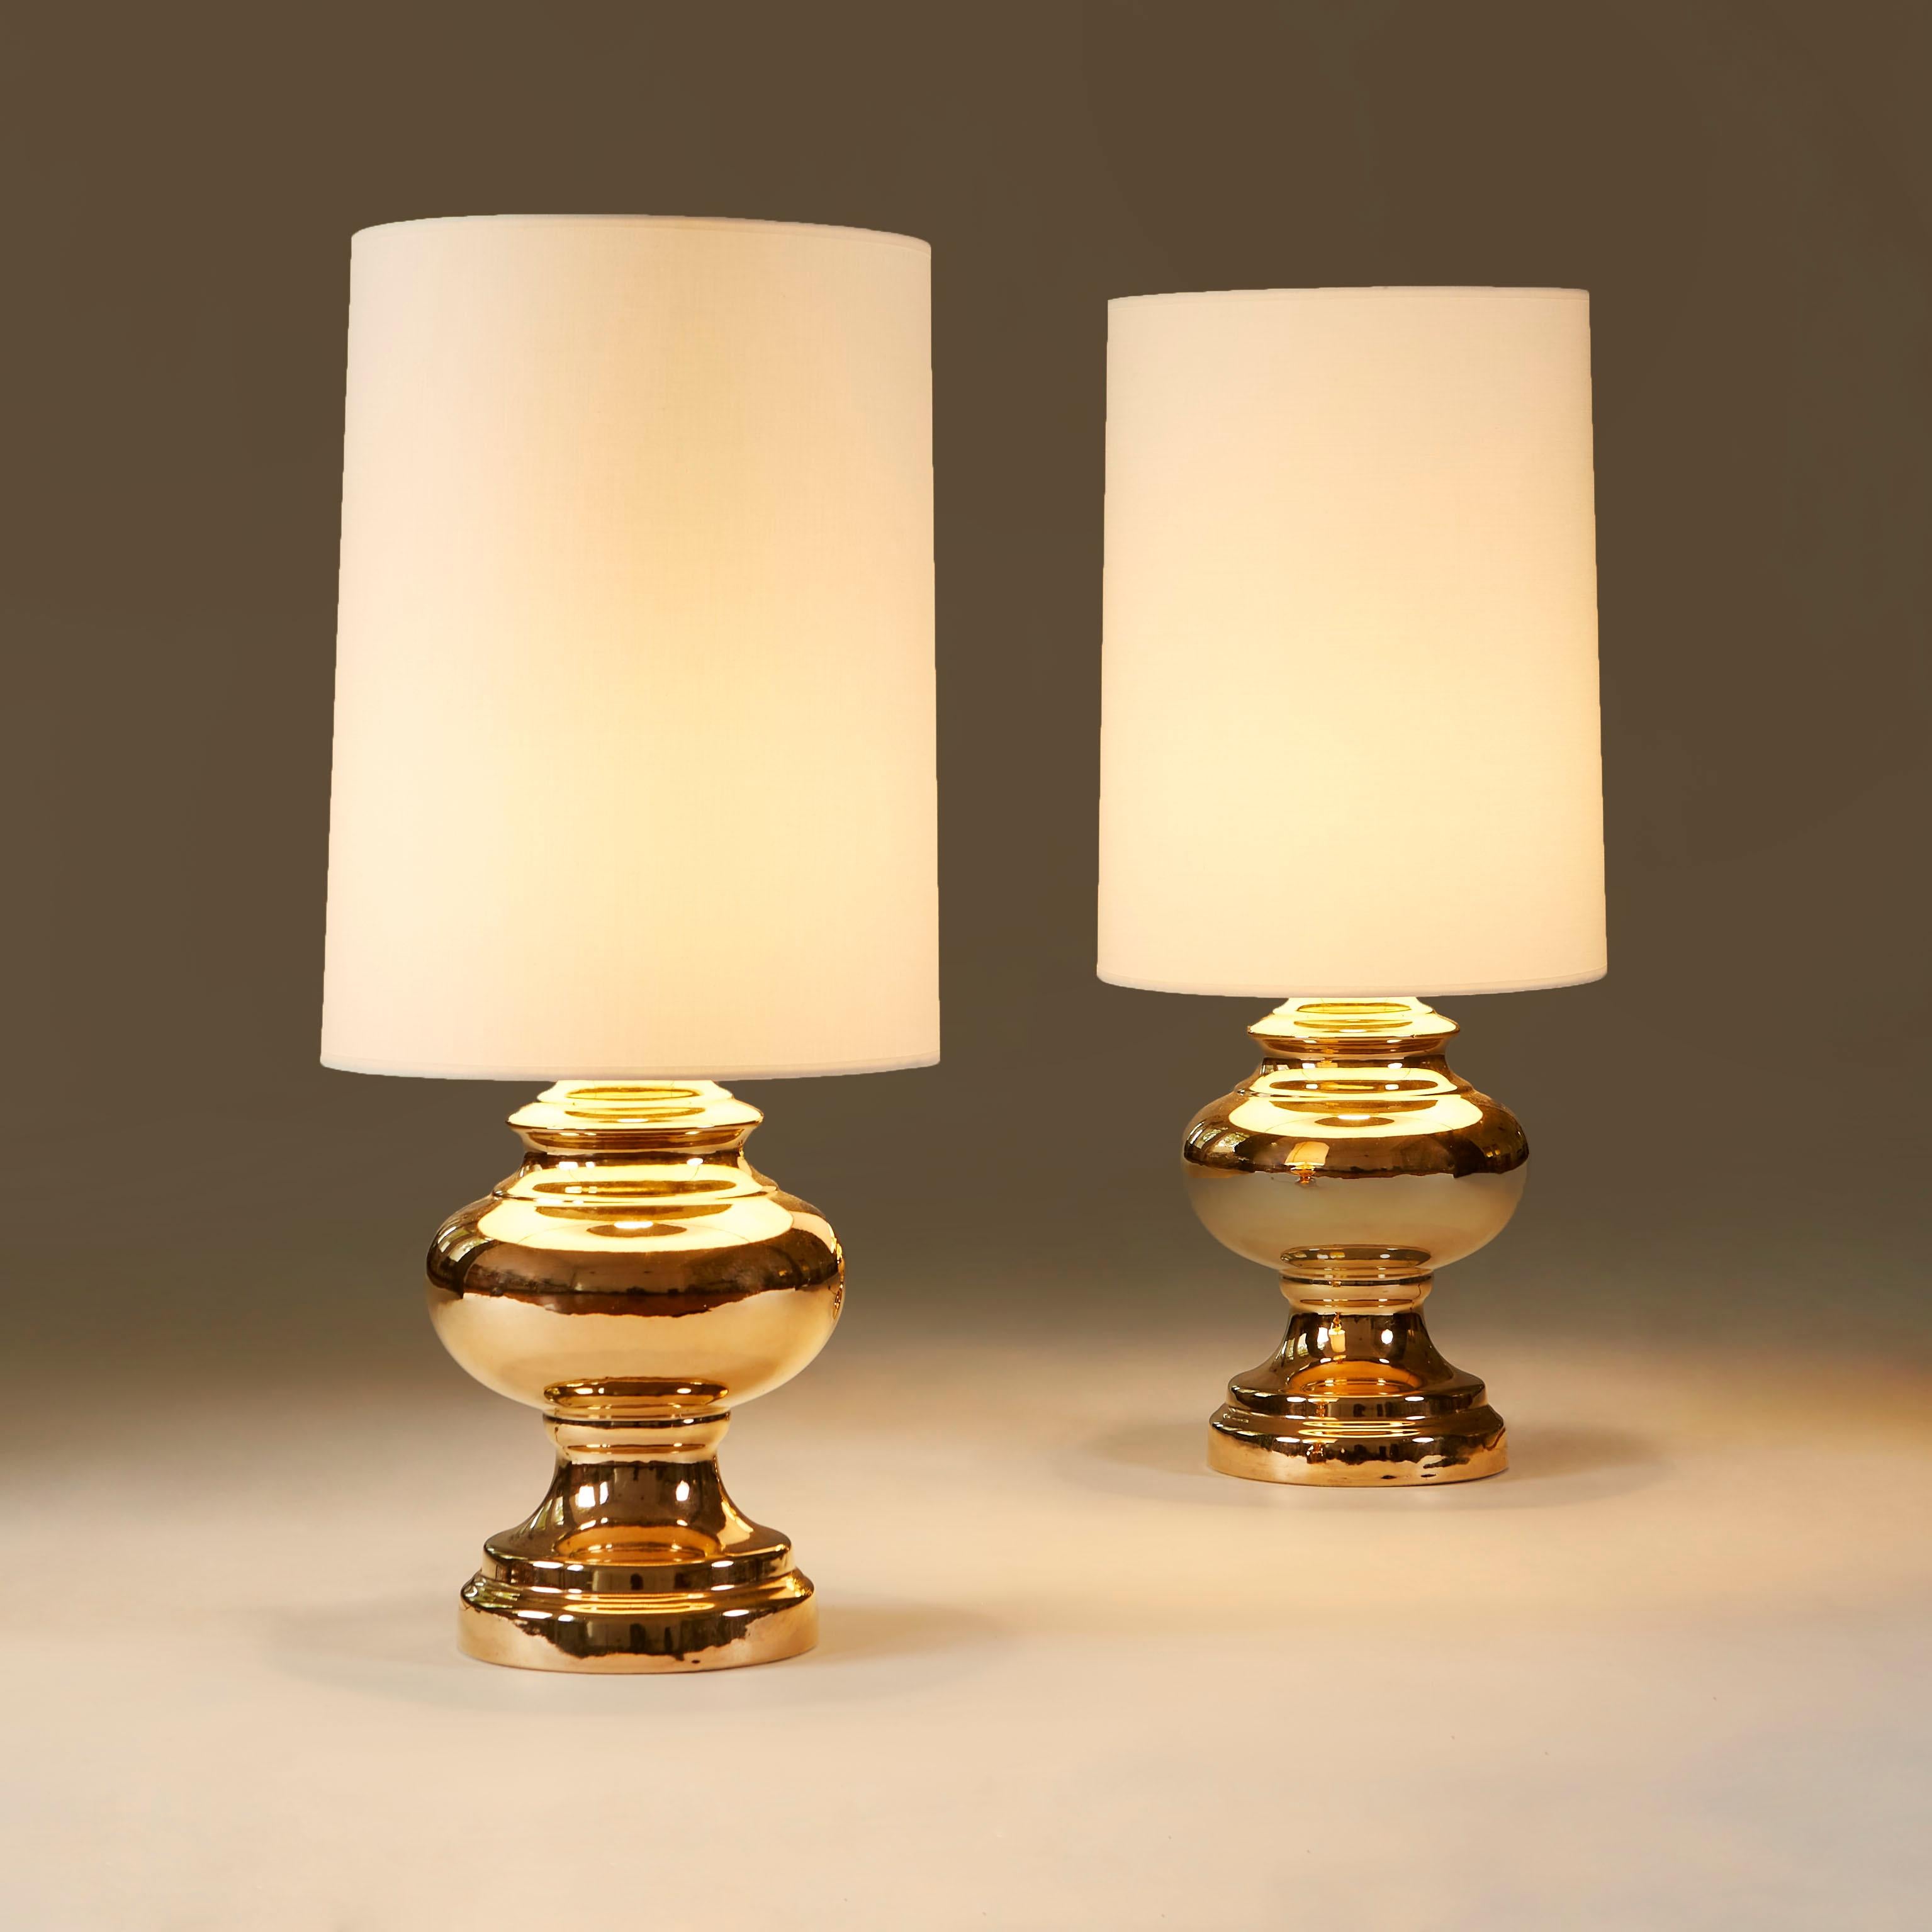 Lampes de table en porcelaine aux formes arrondies et substantielles, dorées à l'or chaud. Comprend une nouvelle paire d'abat-jour faits sur mesure.
La hauteur indiquée comprend les abat-jour.
 